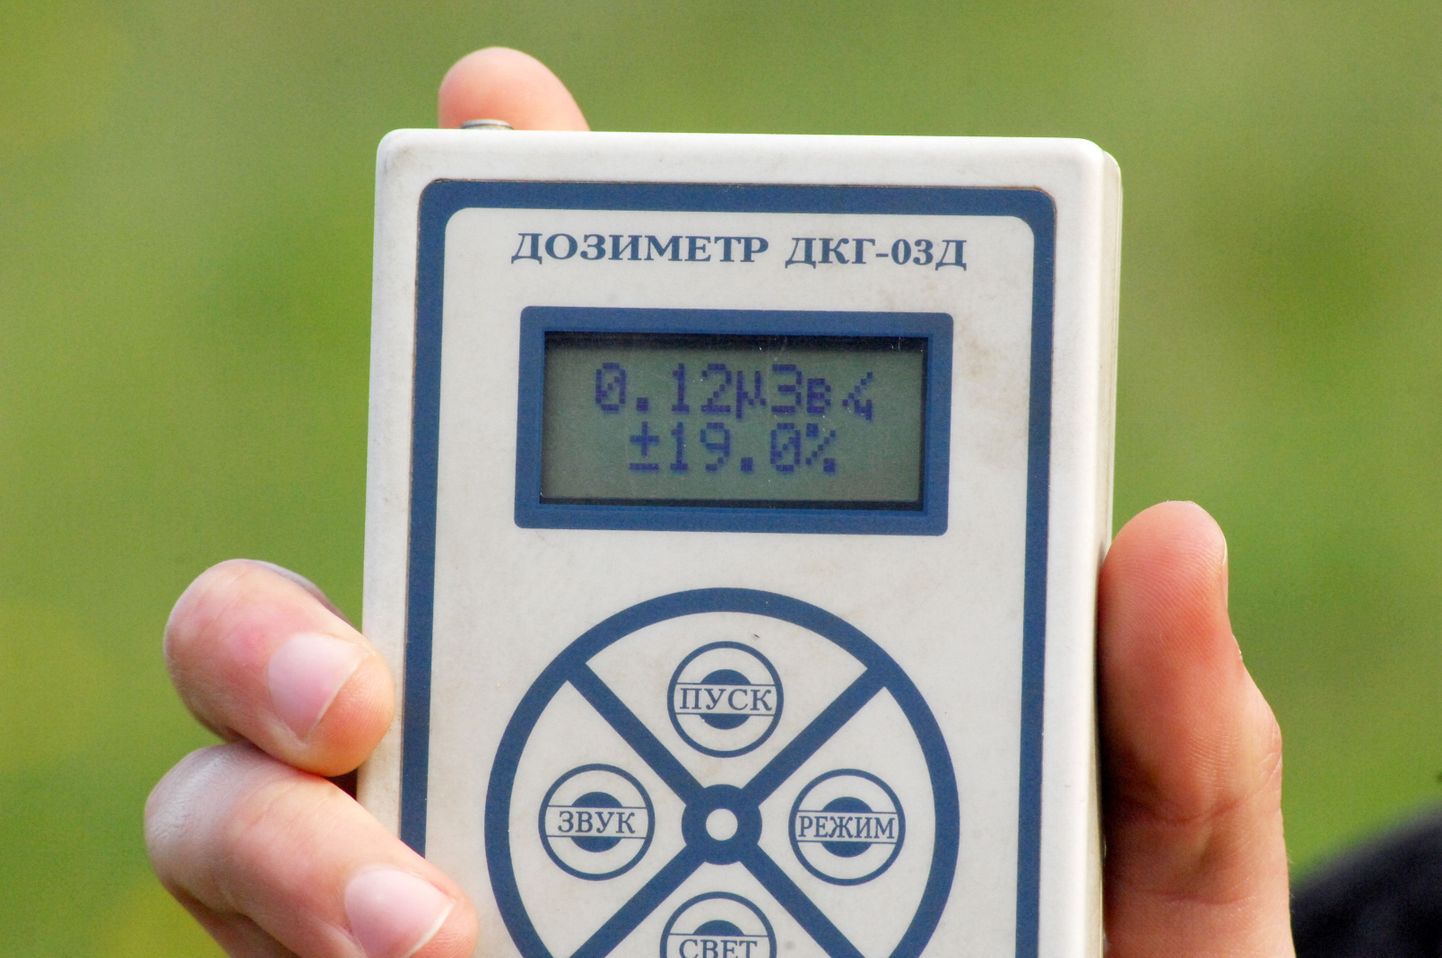 Дозиметр, показывающий уровень радиации. Иллюстративное фото